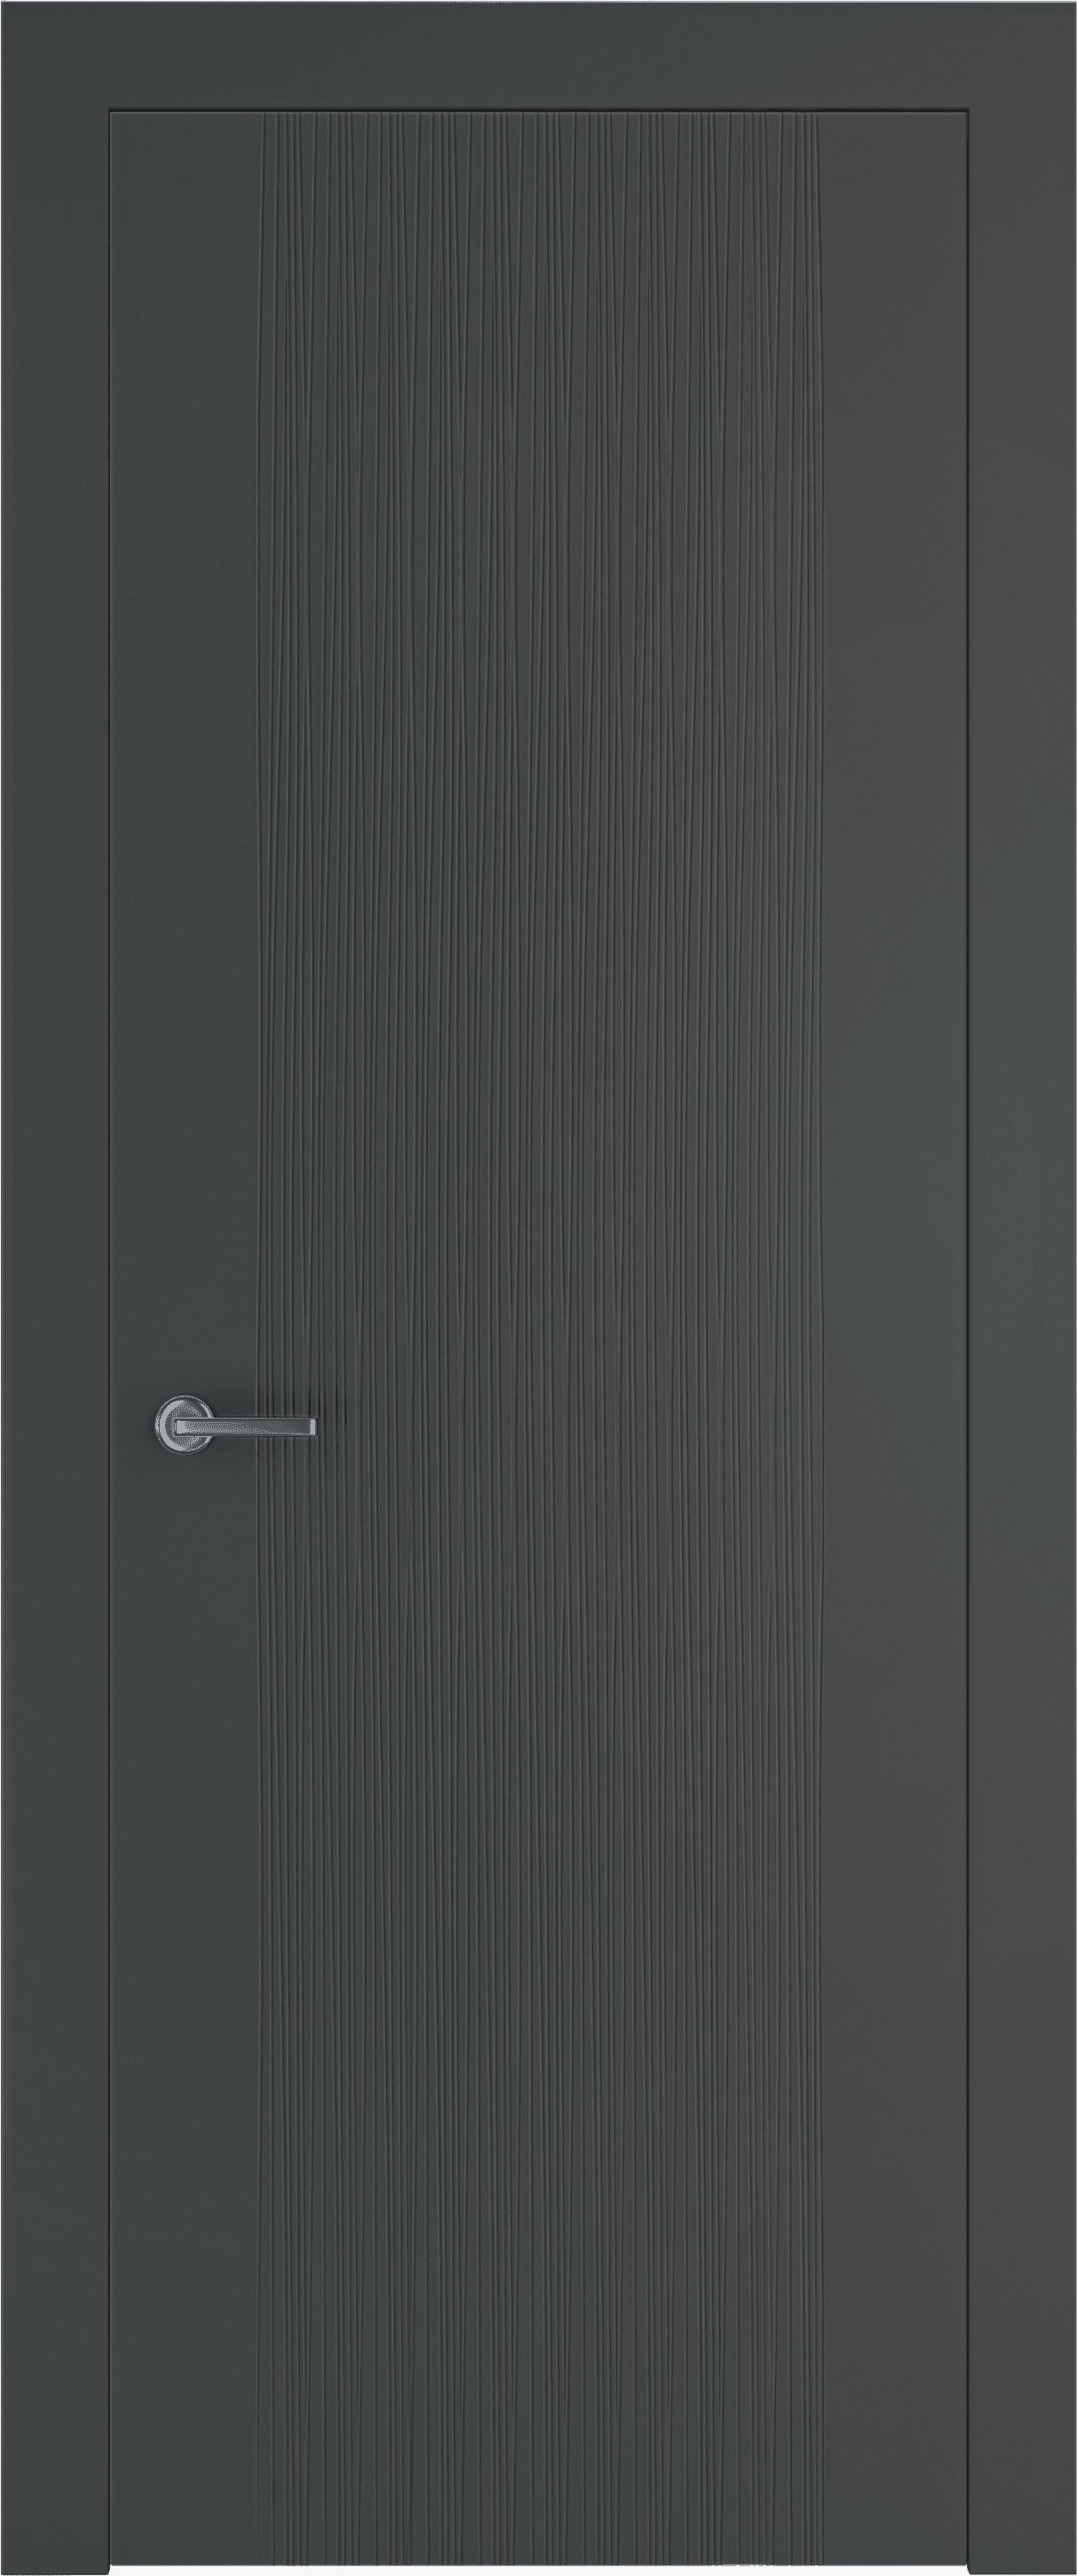 межкомнатные двери эмалированная межкомнатная дверь terso 06 серый 7011